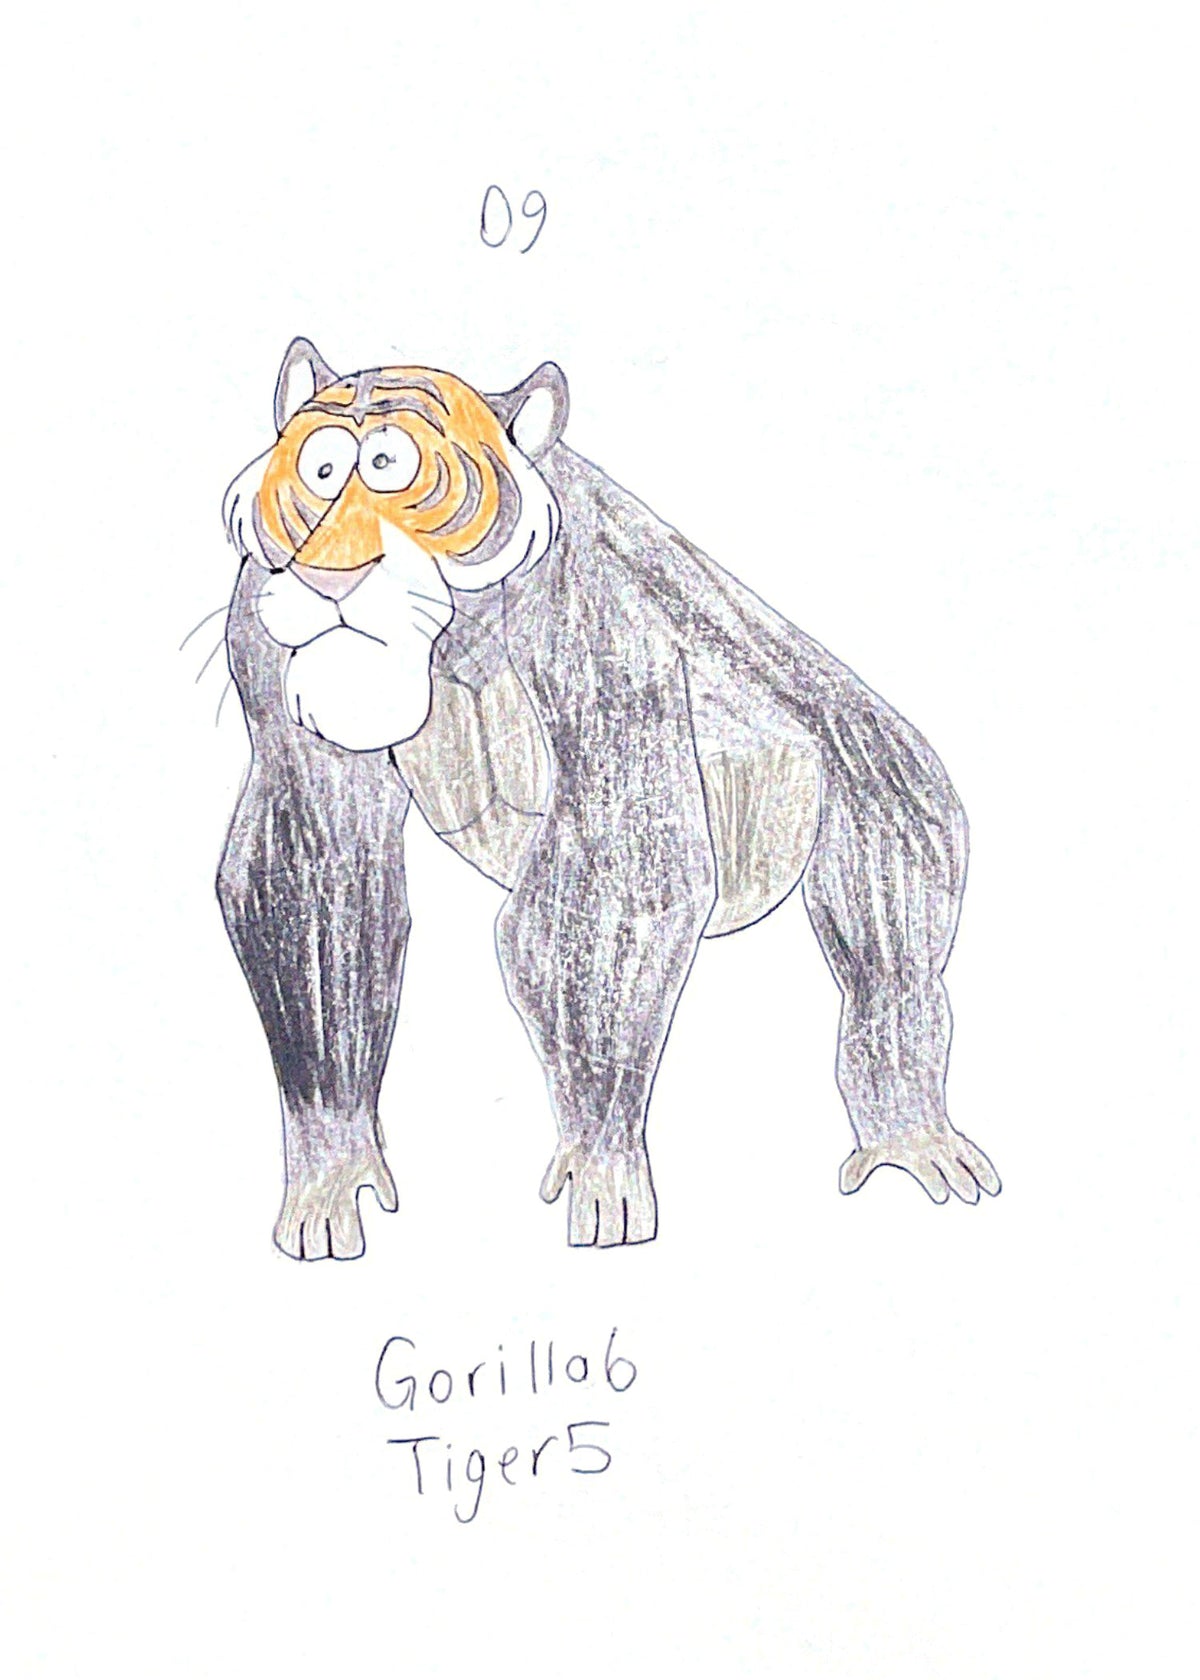 Gorilla Tiger 09